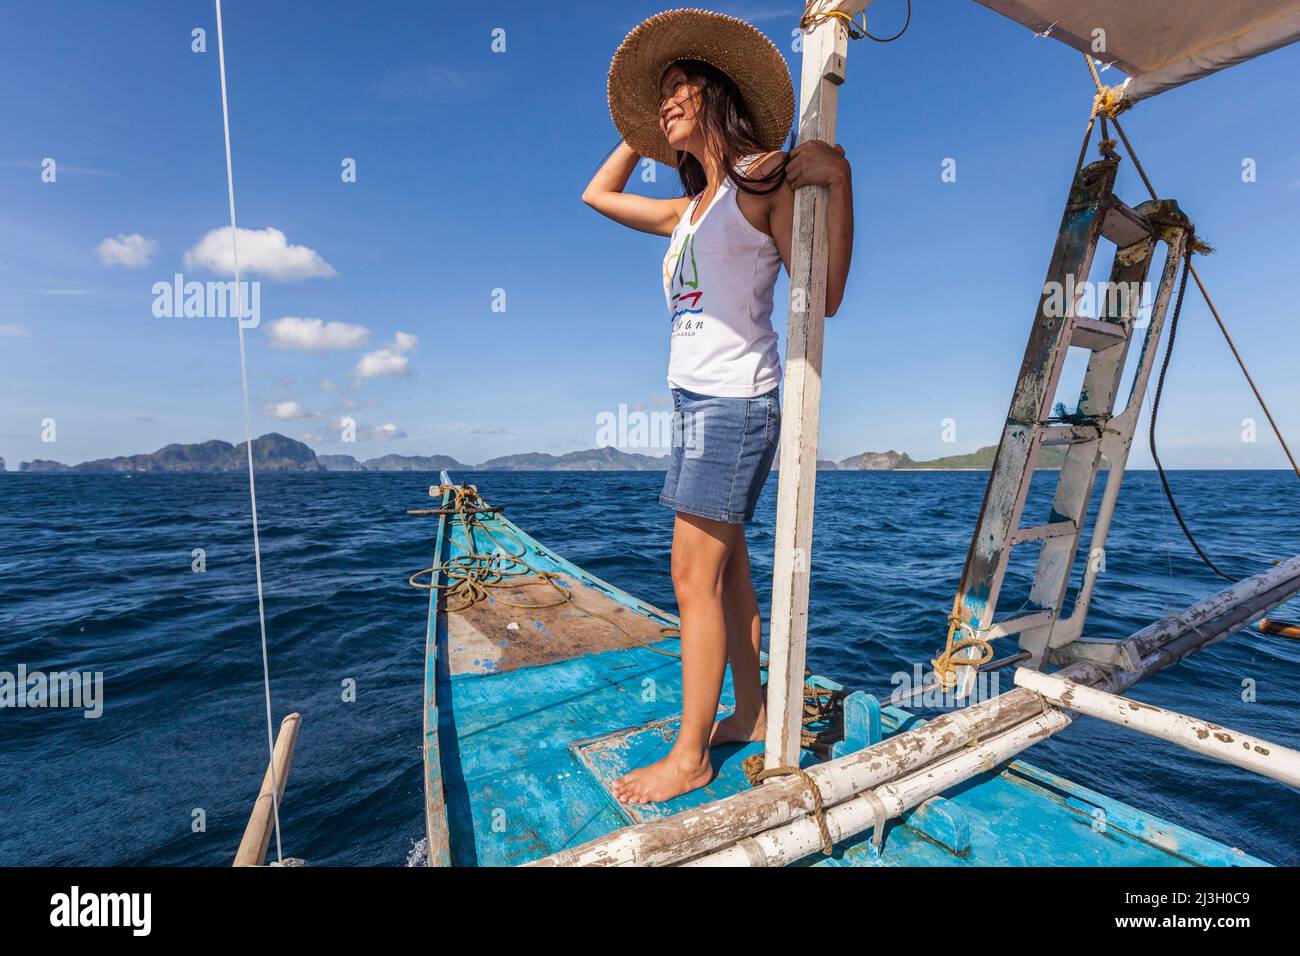 Philippinen, Palawan, El Nido, Bacuit-Archipel, junge philippinische Frau, die auf dem Bug eines Auslegerkanus auf dem Weg zur Miniloc-Insel steht Stockfoto